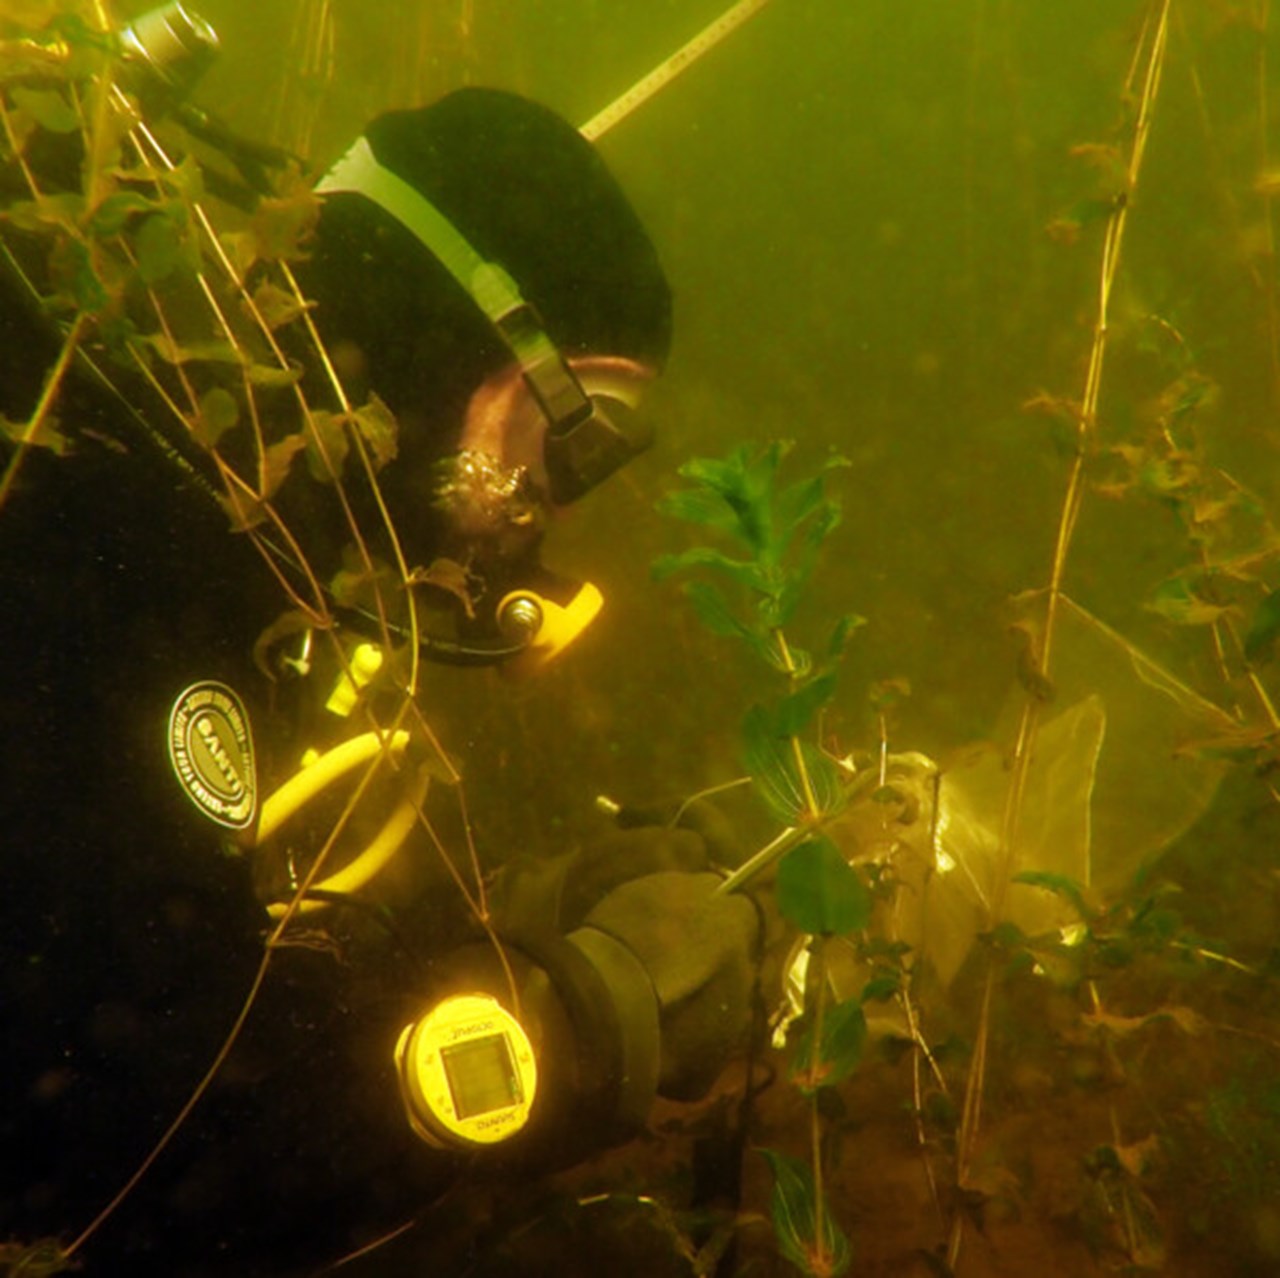 Diver examining bottom vegetation.